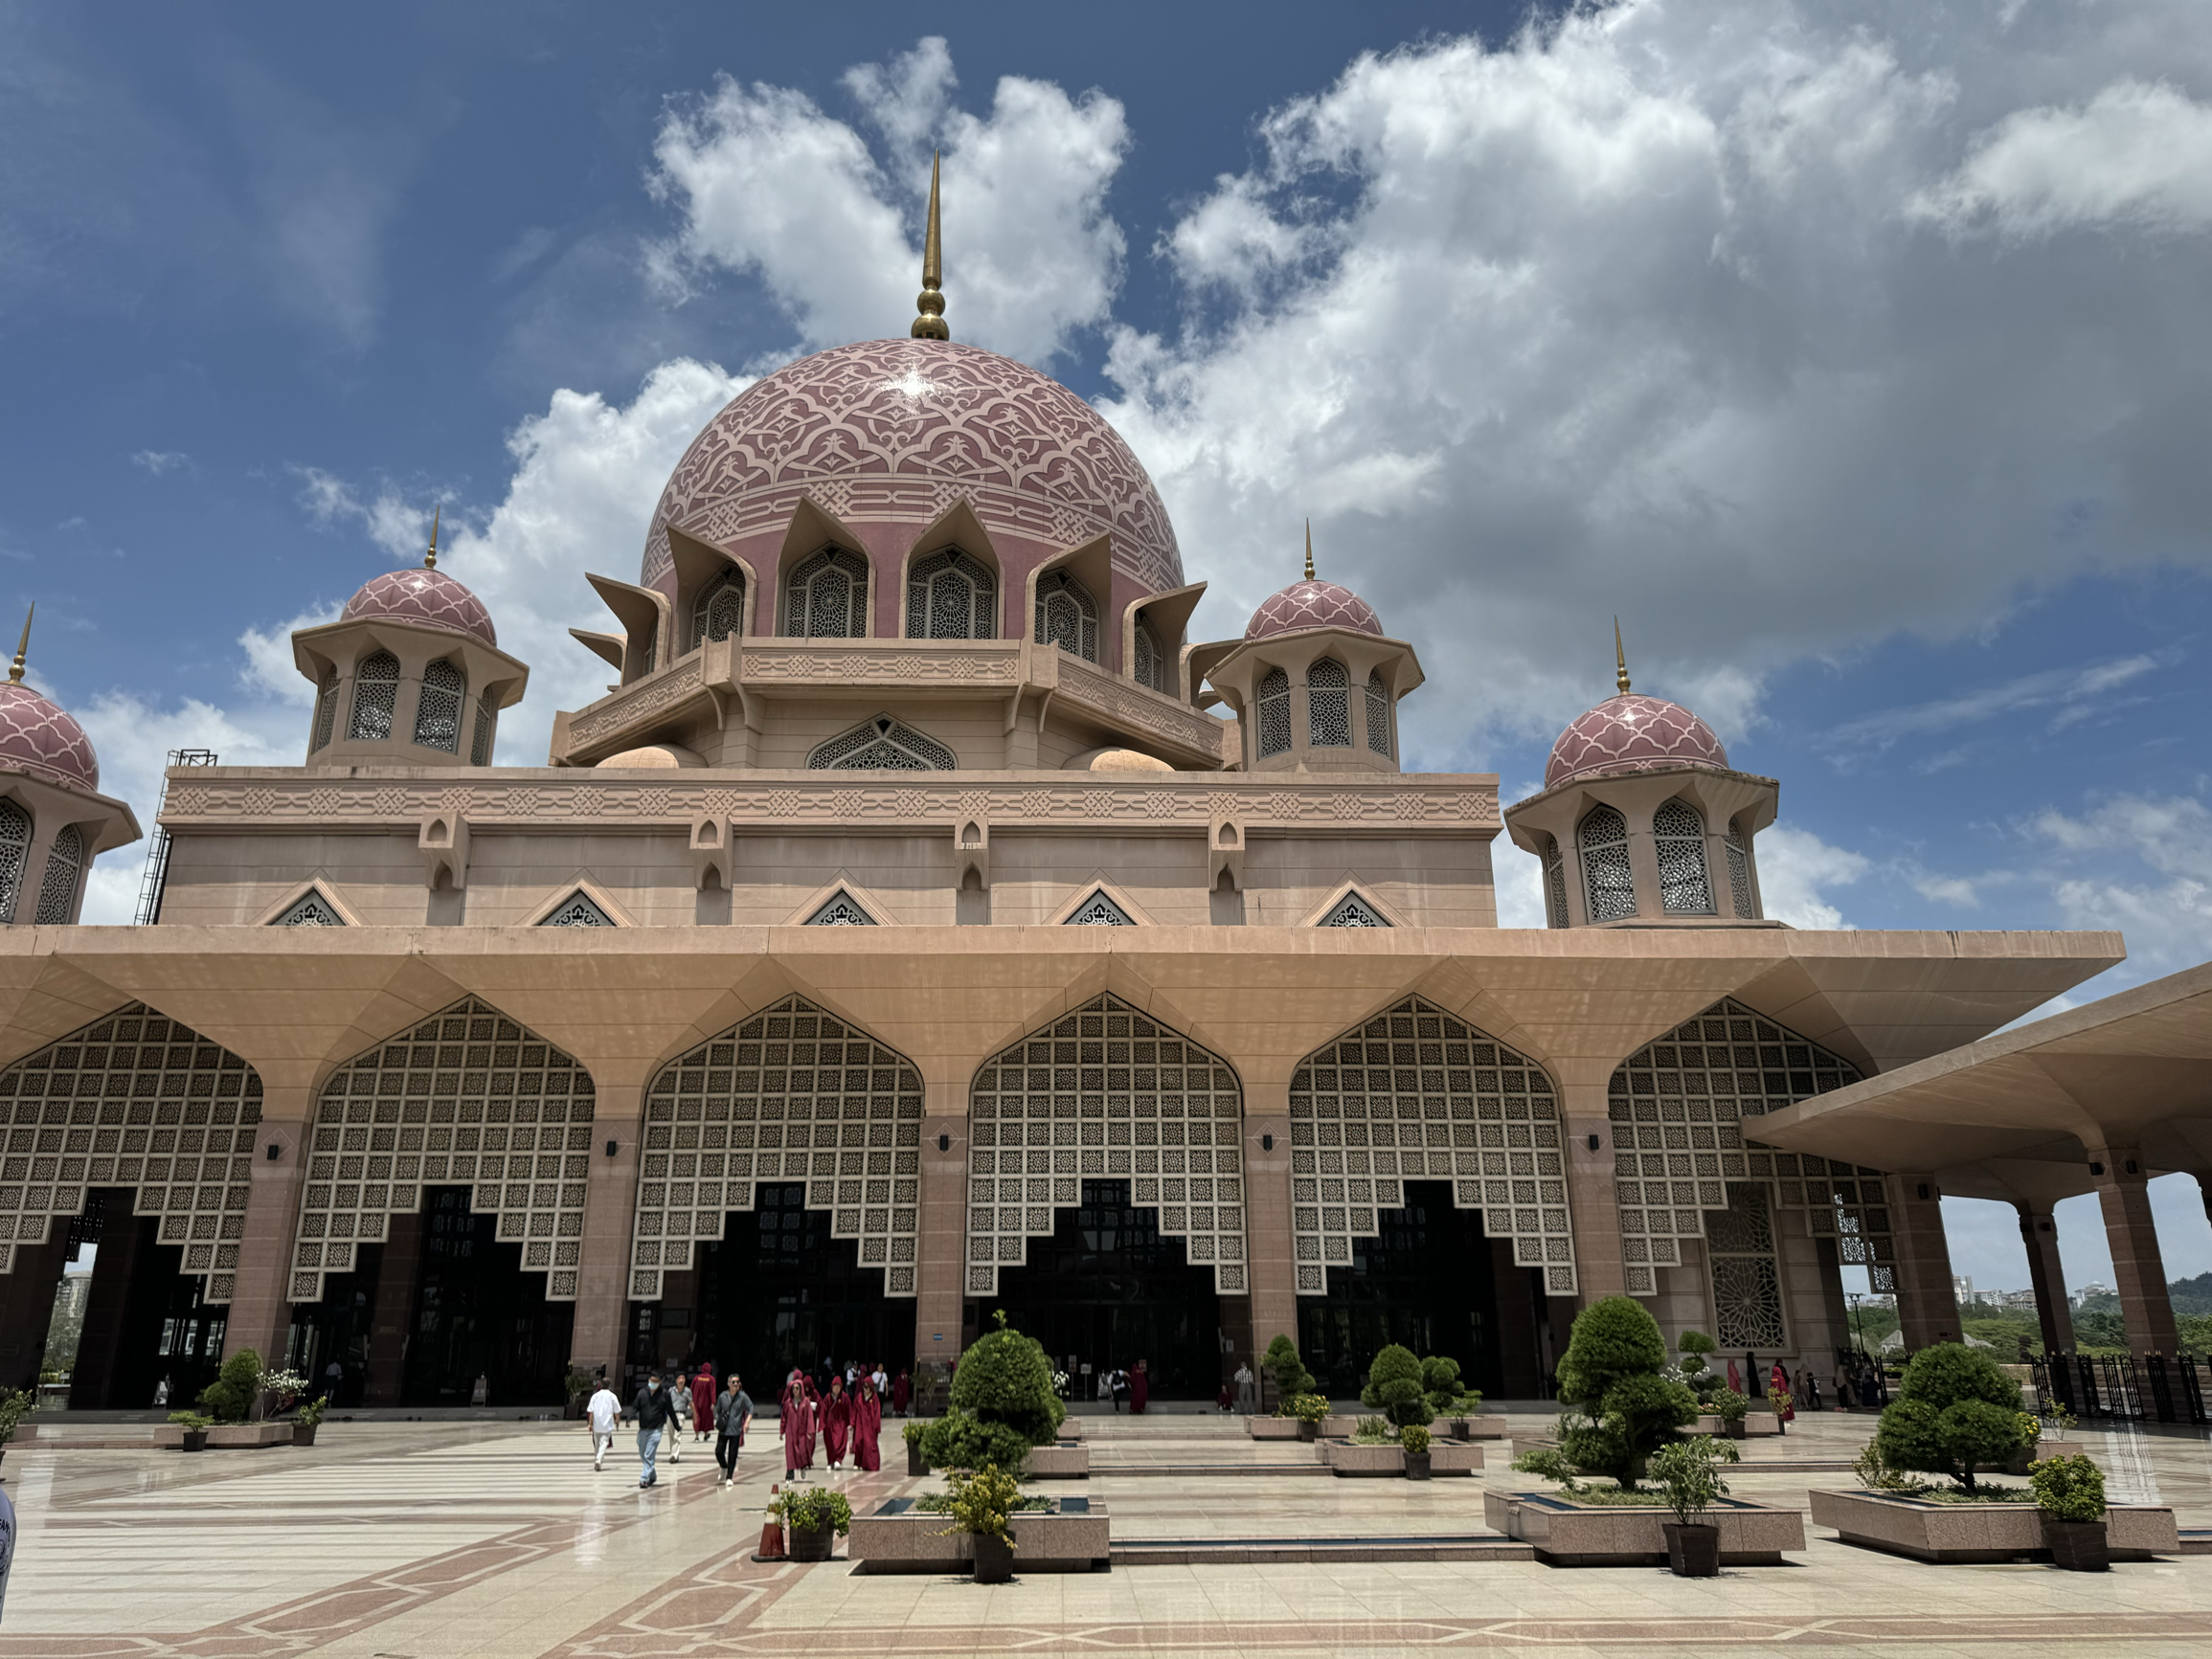 布城粉红清真寺是一座著名的清真寺，为了尊重该地的宗教和文化传统，游客需要遵守一些规定： 1. 进入清